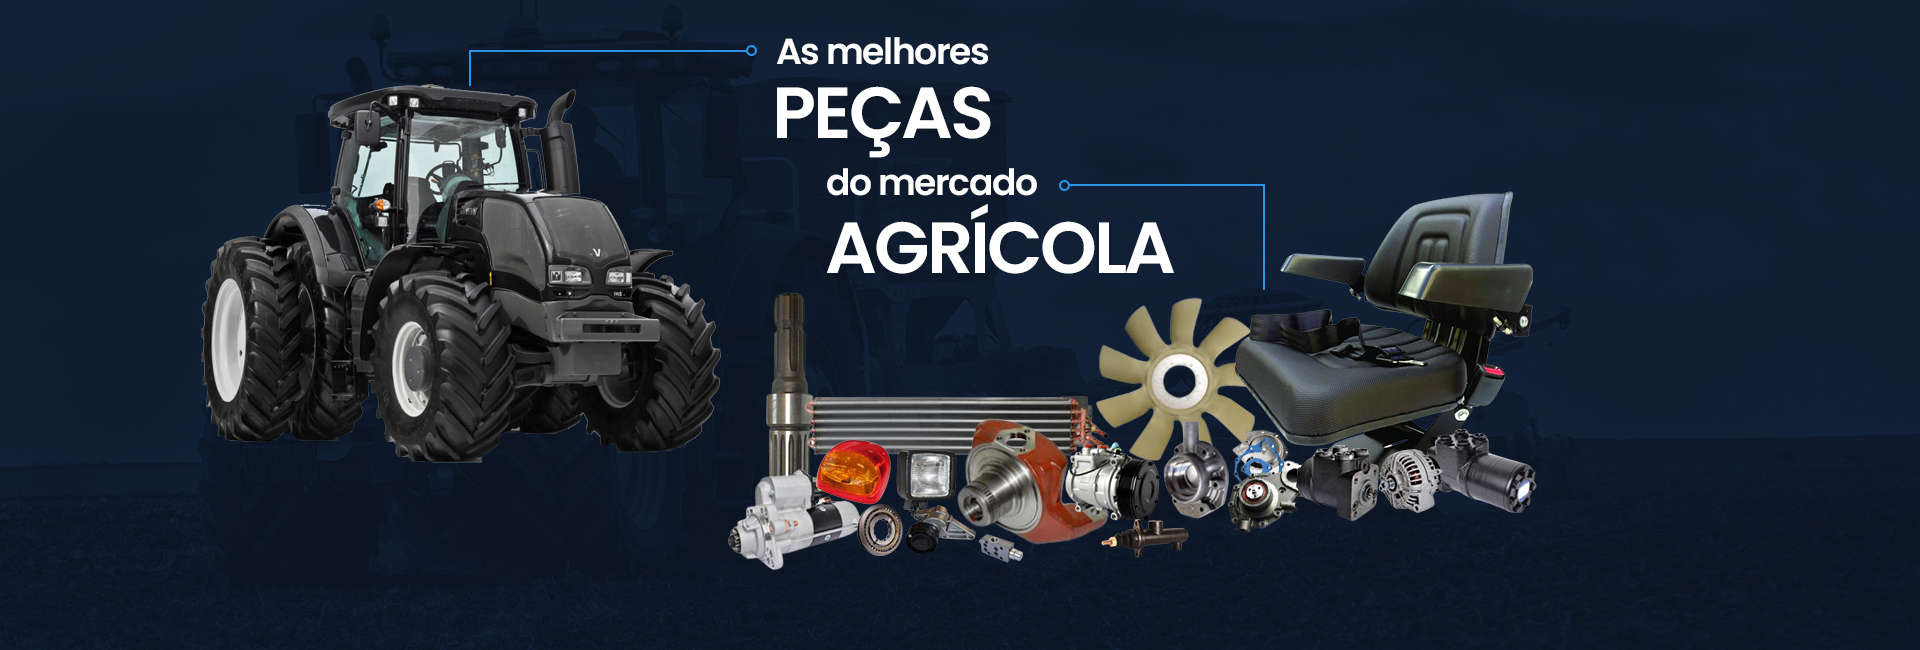 Imagem do slide: As melhores peças do mercado agrícola - Diferencial Agrícola